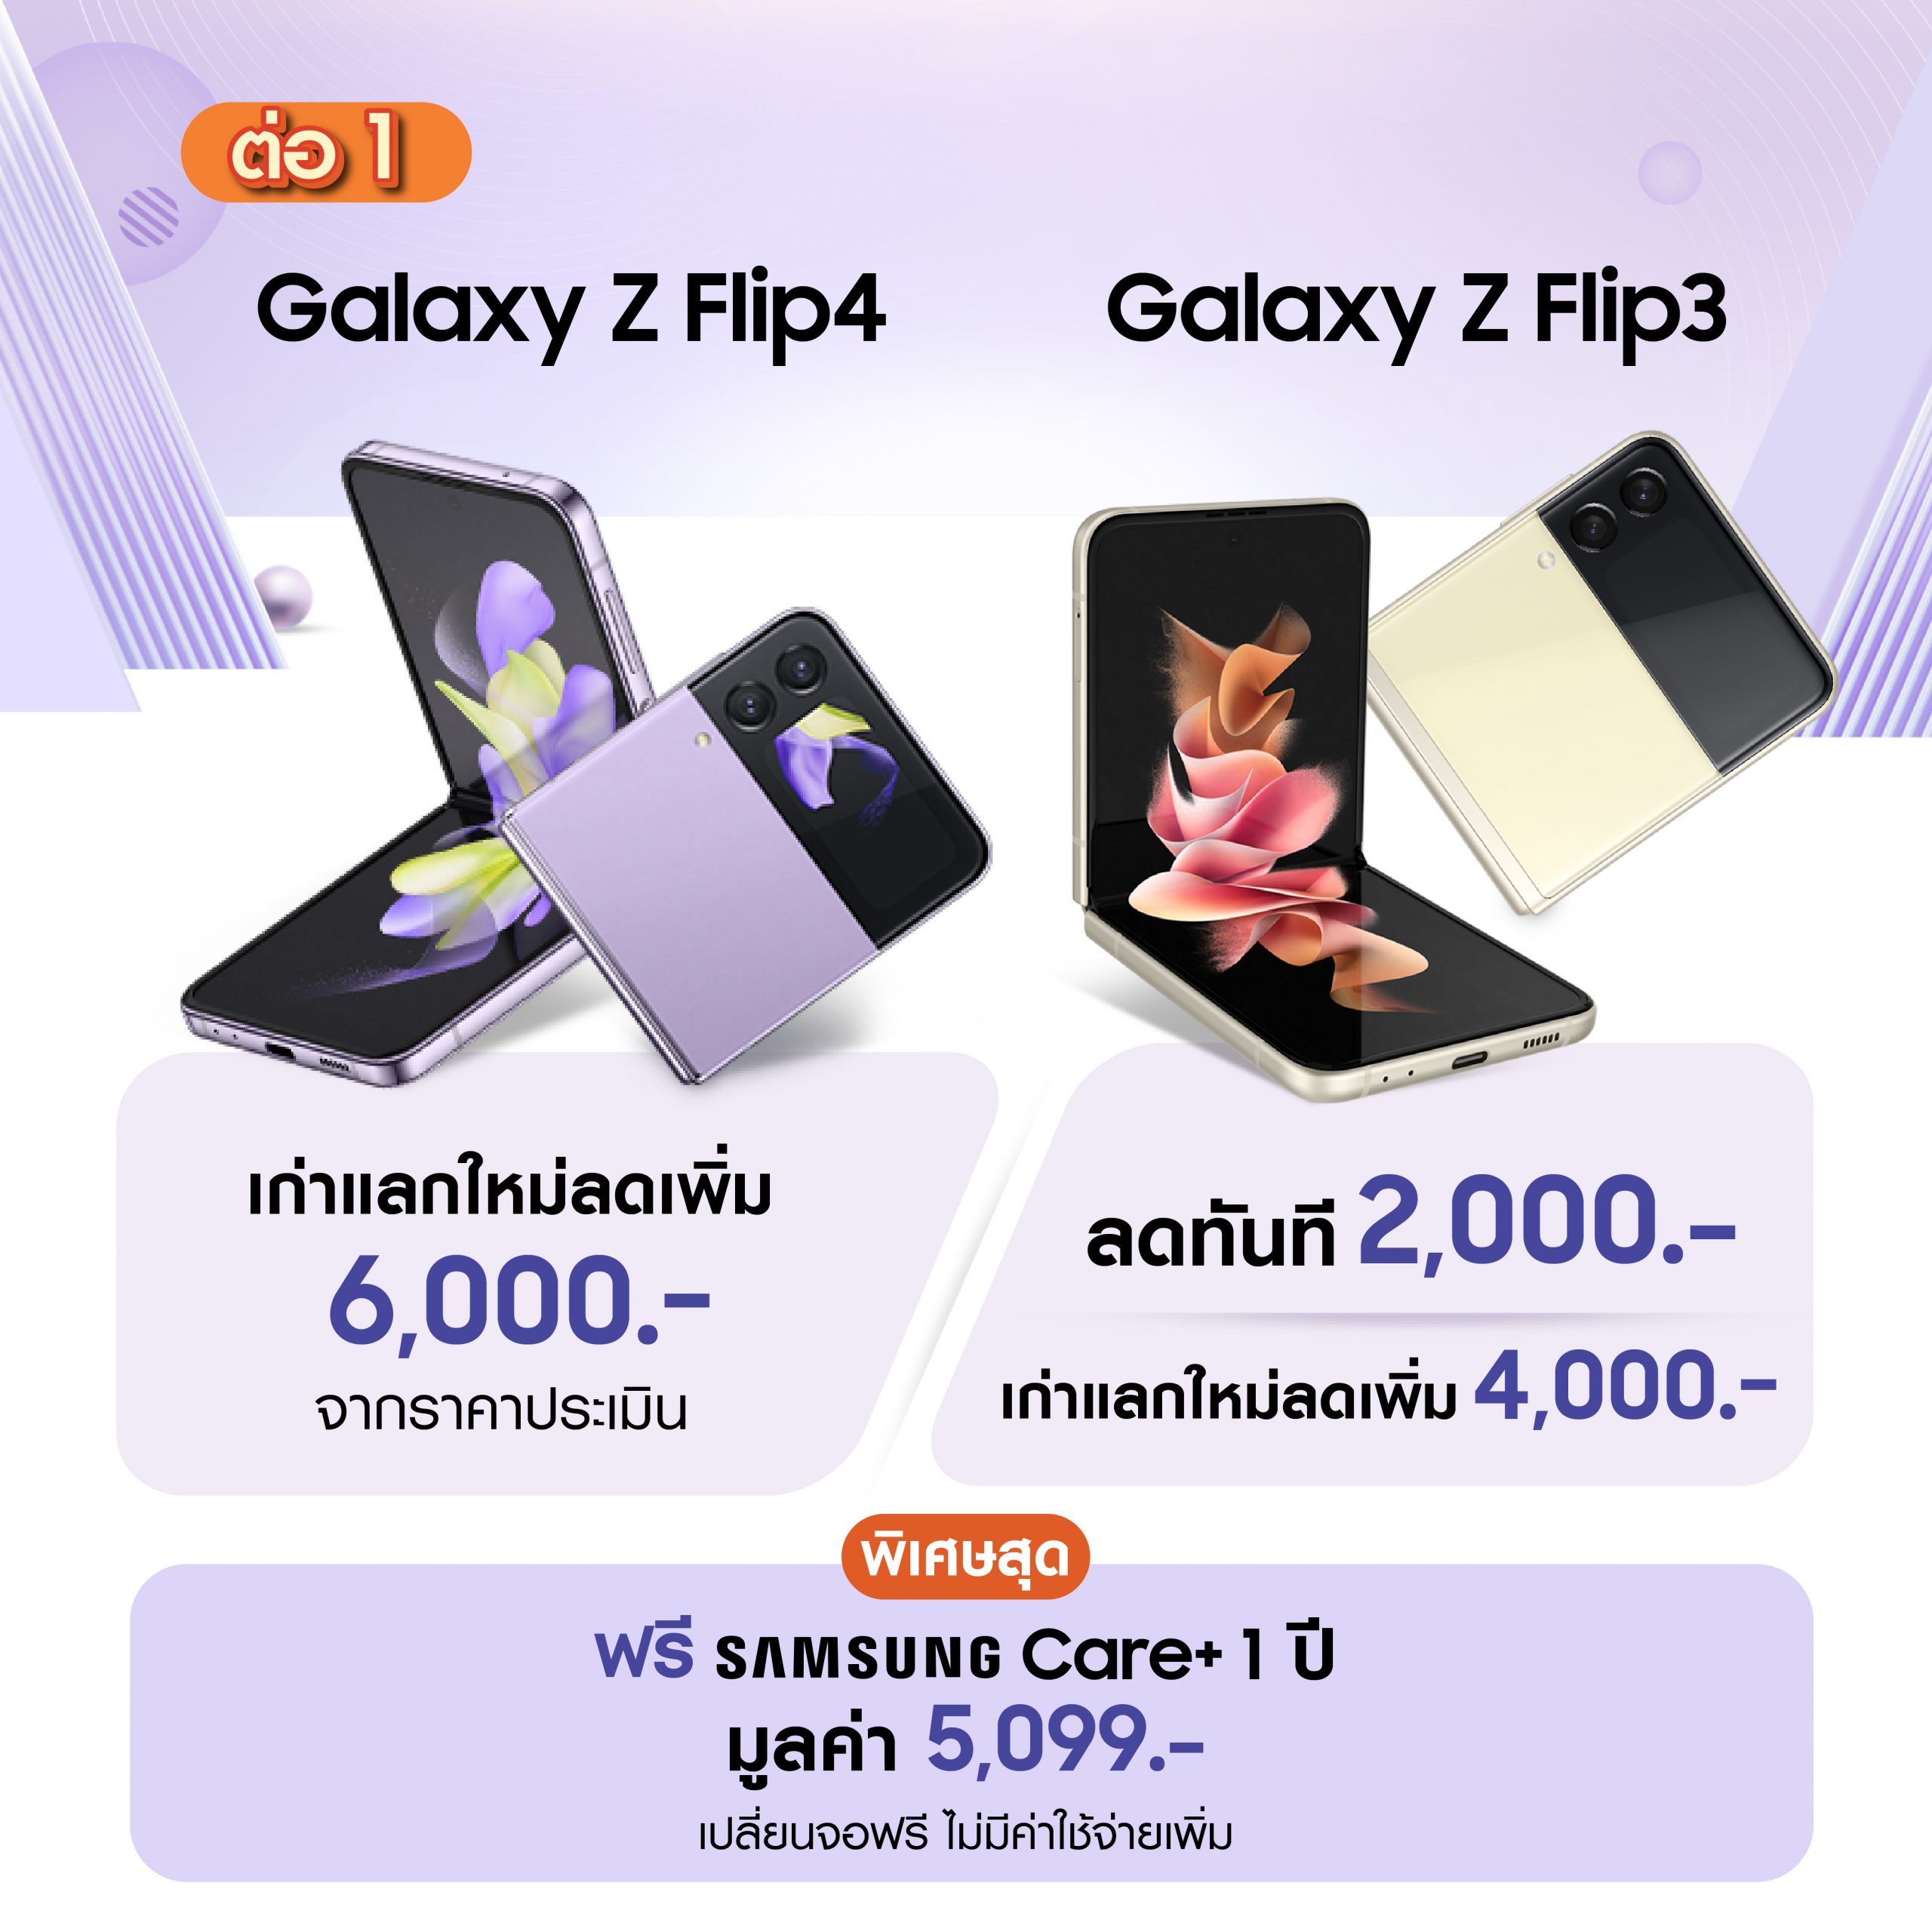 Samsung Thailand Mobile Expo